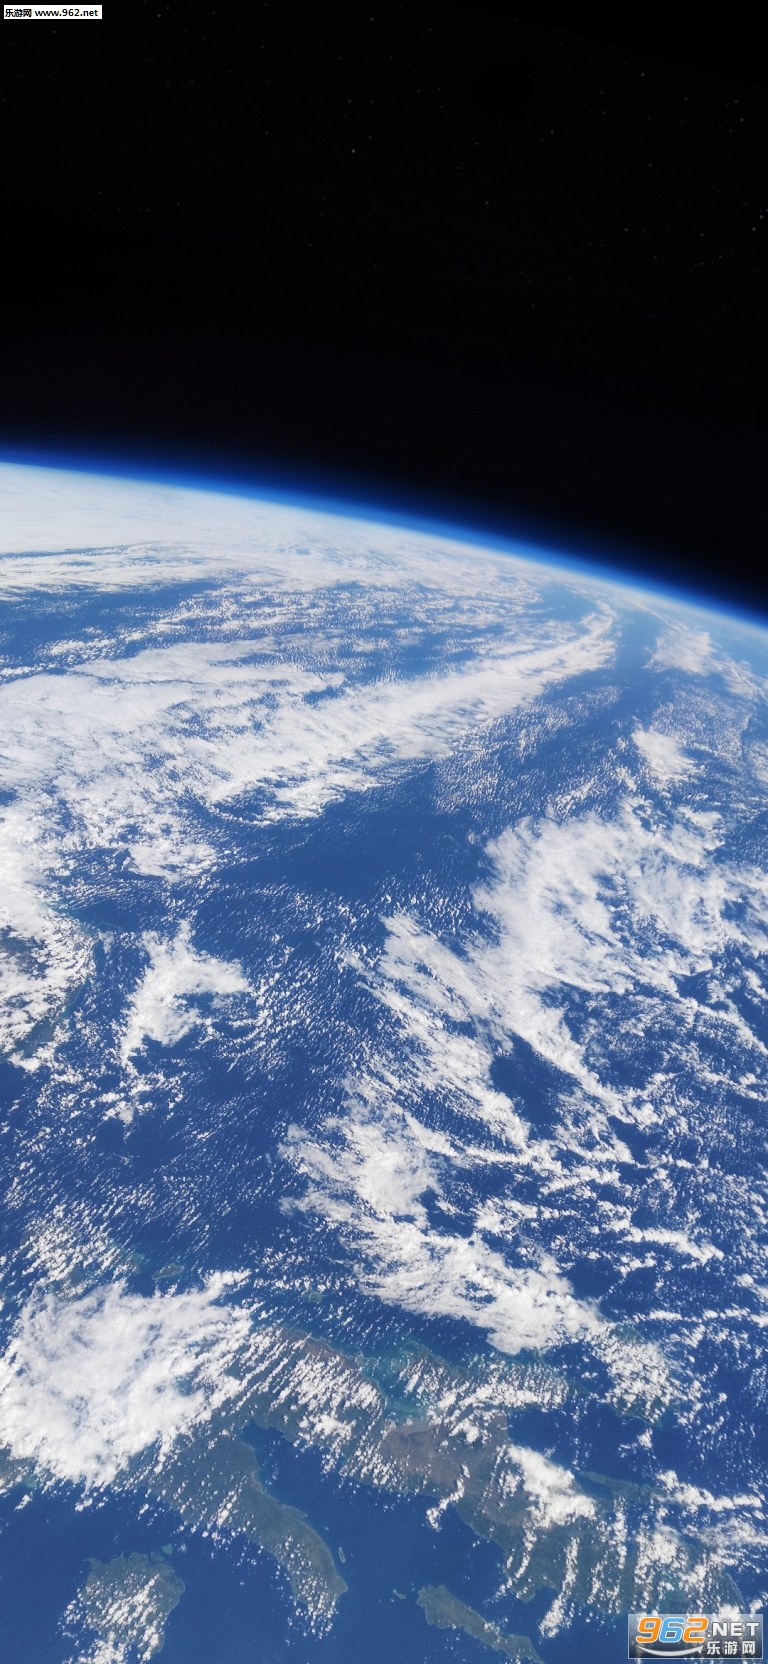 从太空俯瞰地球图片 太空俯瞰地球高清壁纸下载 乐游网手机下载站